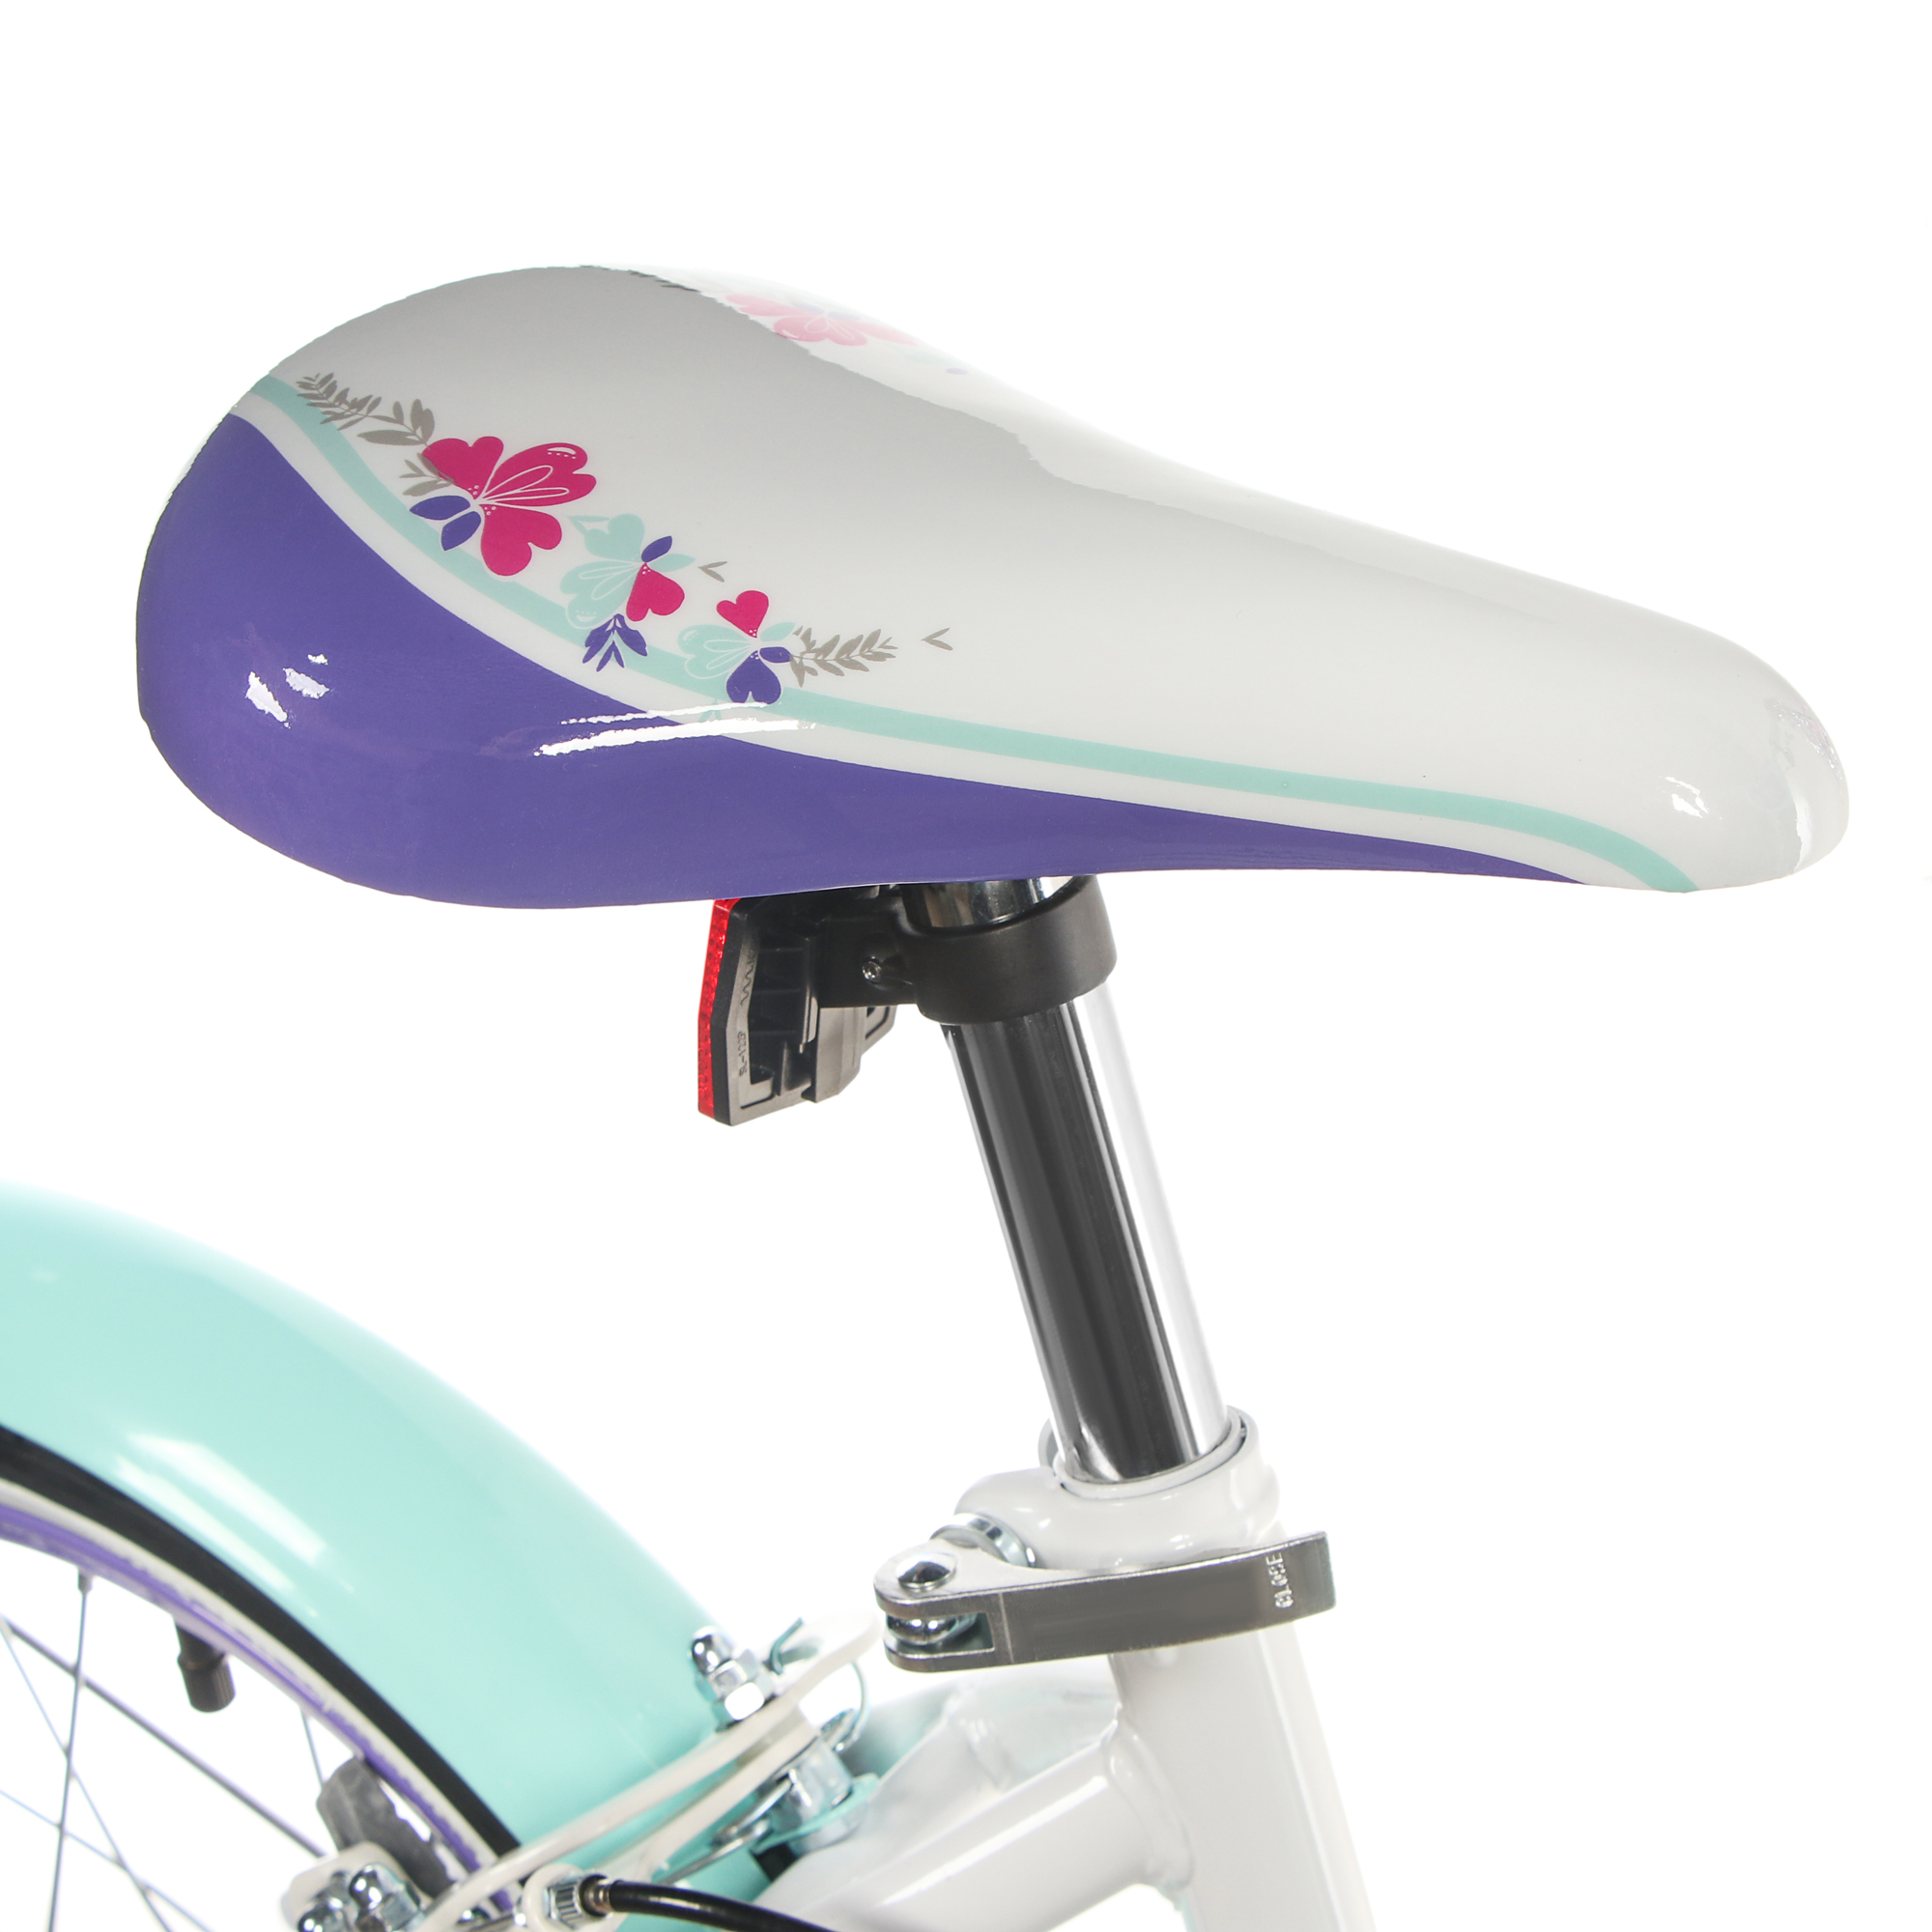 Велосипед детский Huffy Сreme soda, белый, 16 дюймов, для девочек, цвет бирюзовый - фото 6